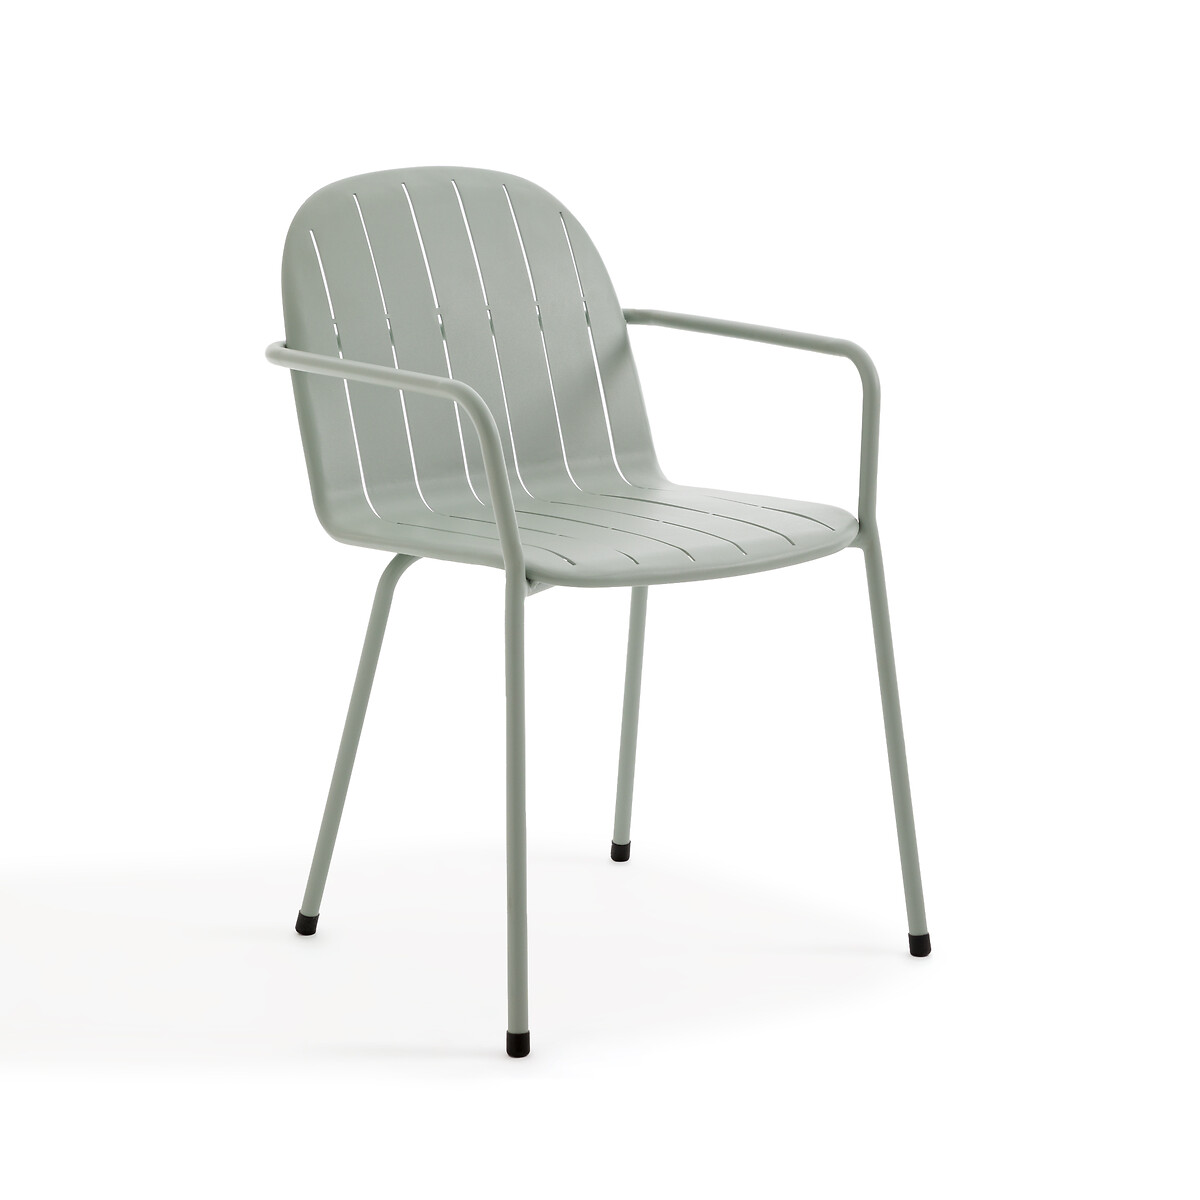 Кресло Для столовой садовое из алюминия Kotanne единый размер зеленый LaRedoute - фото 1